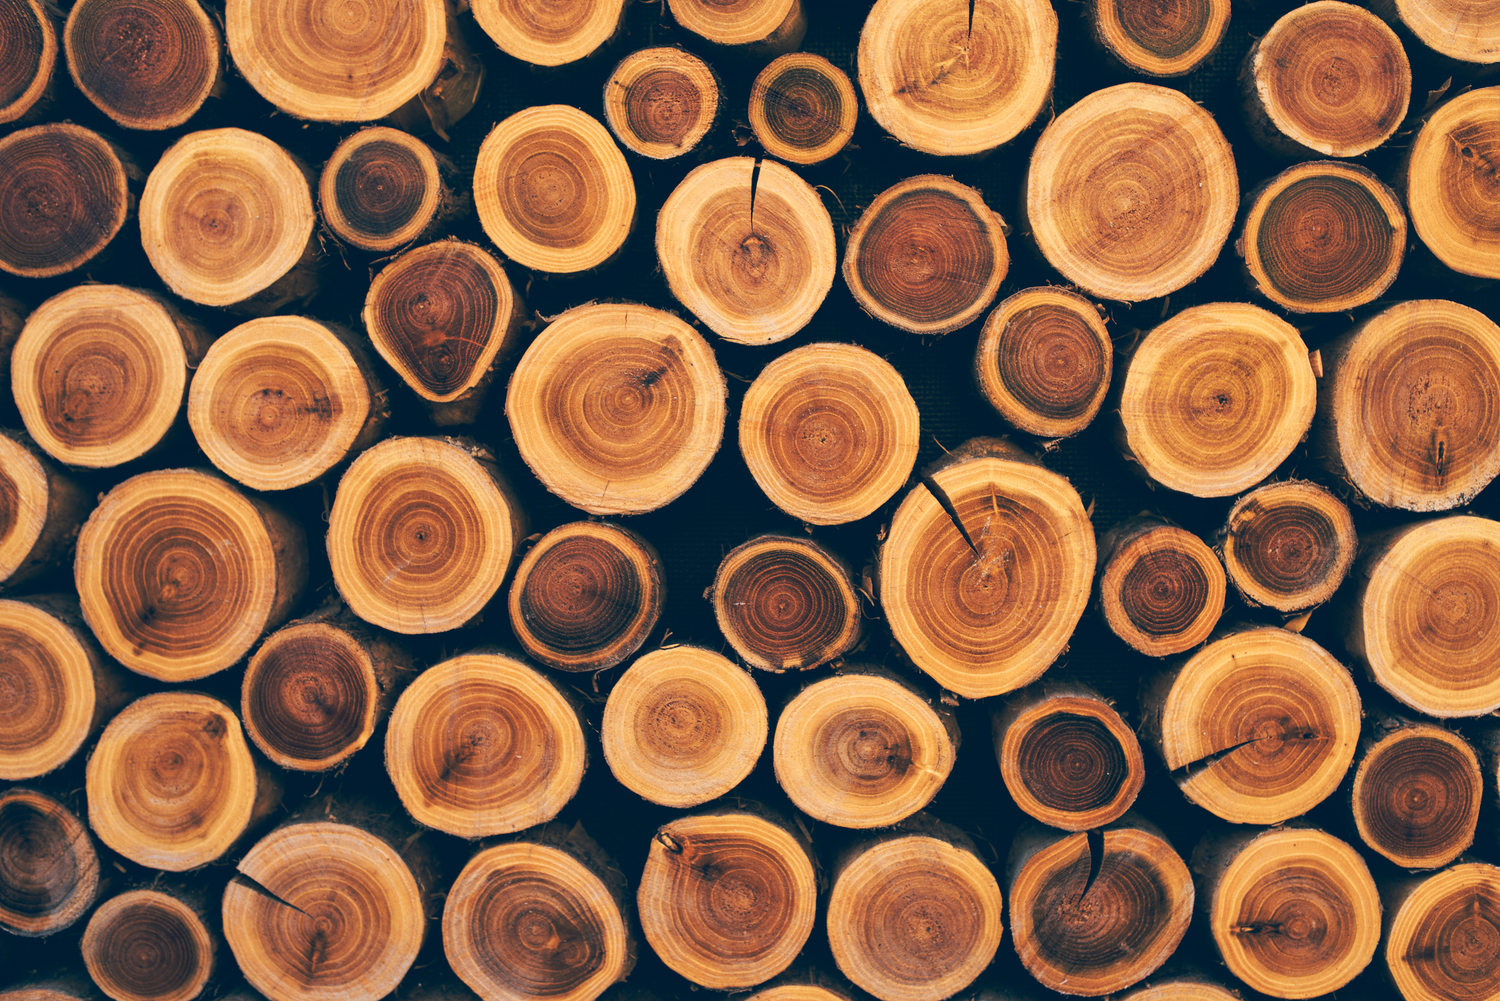 Holzarten erkennen – wichtige Unterscheidungsmerkmale